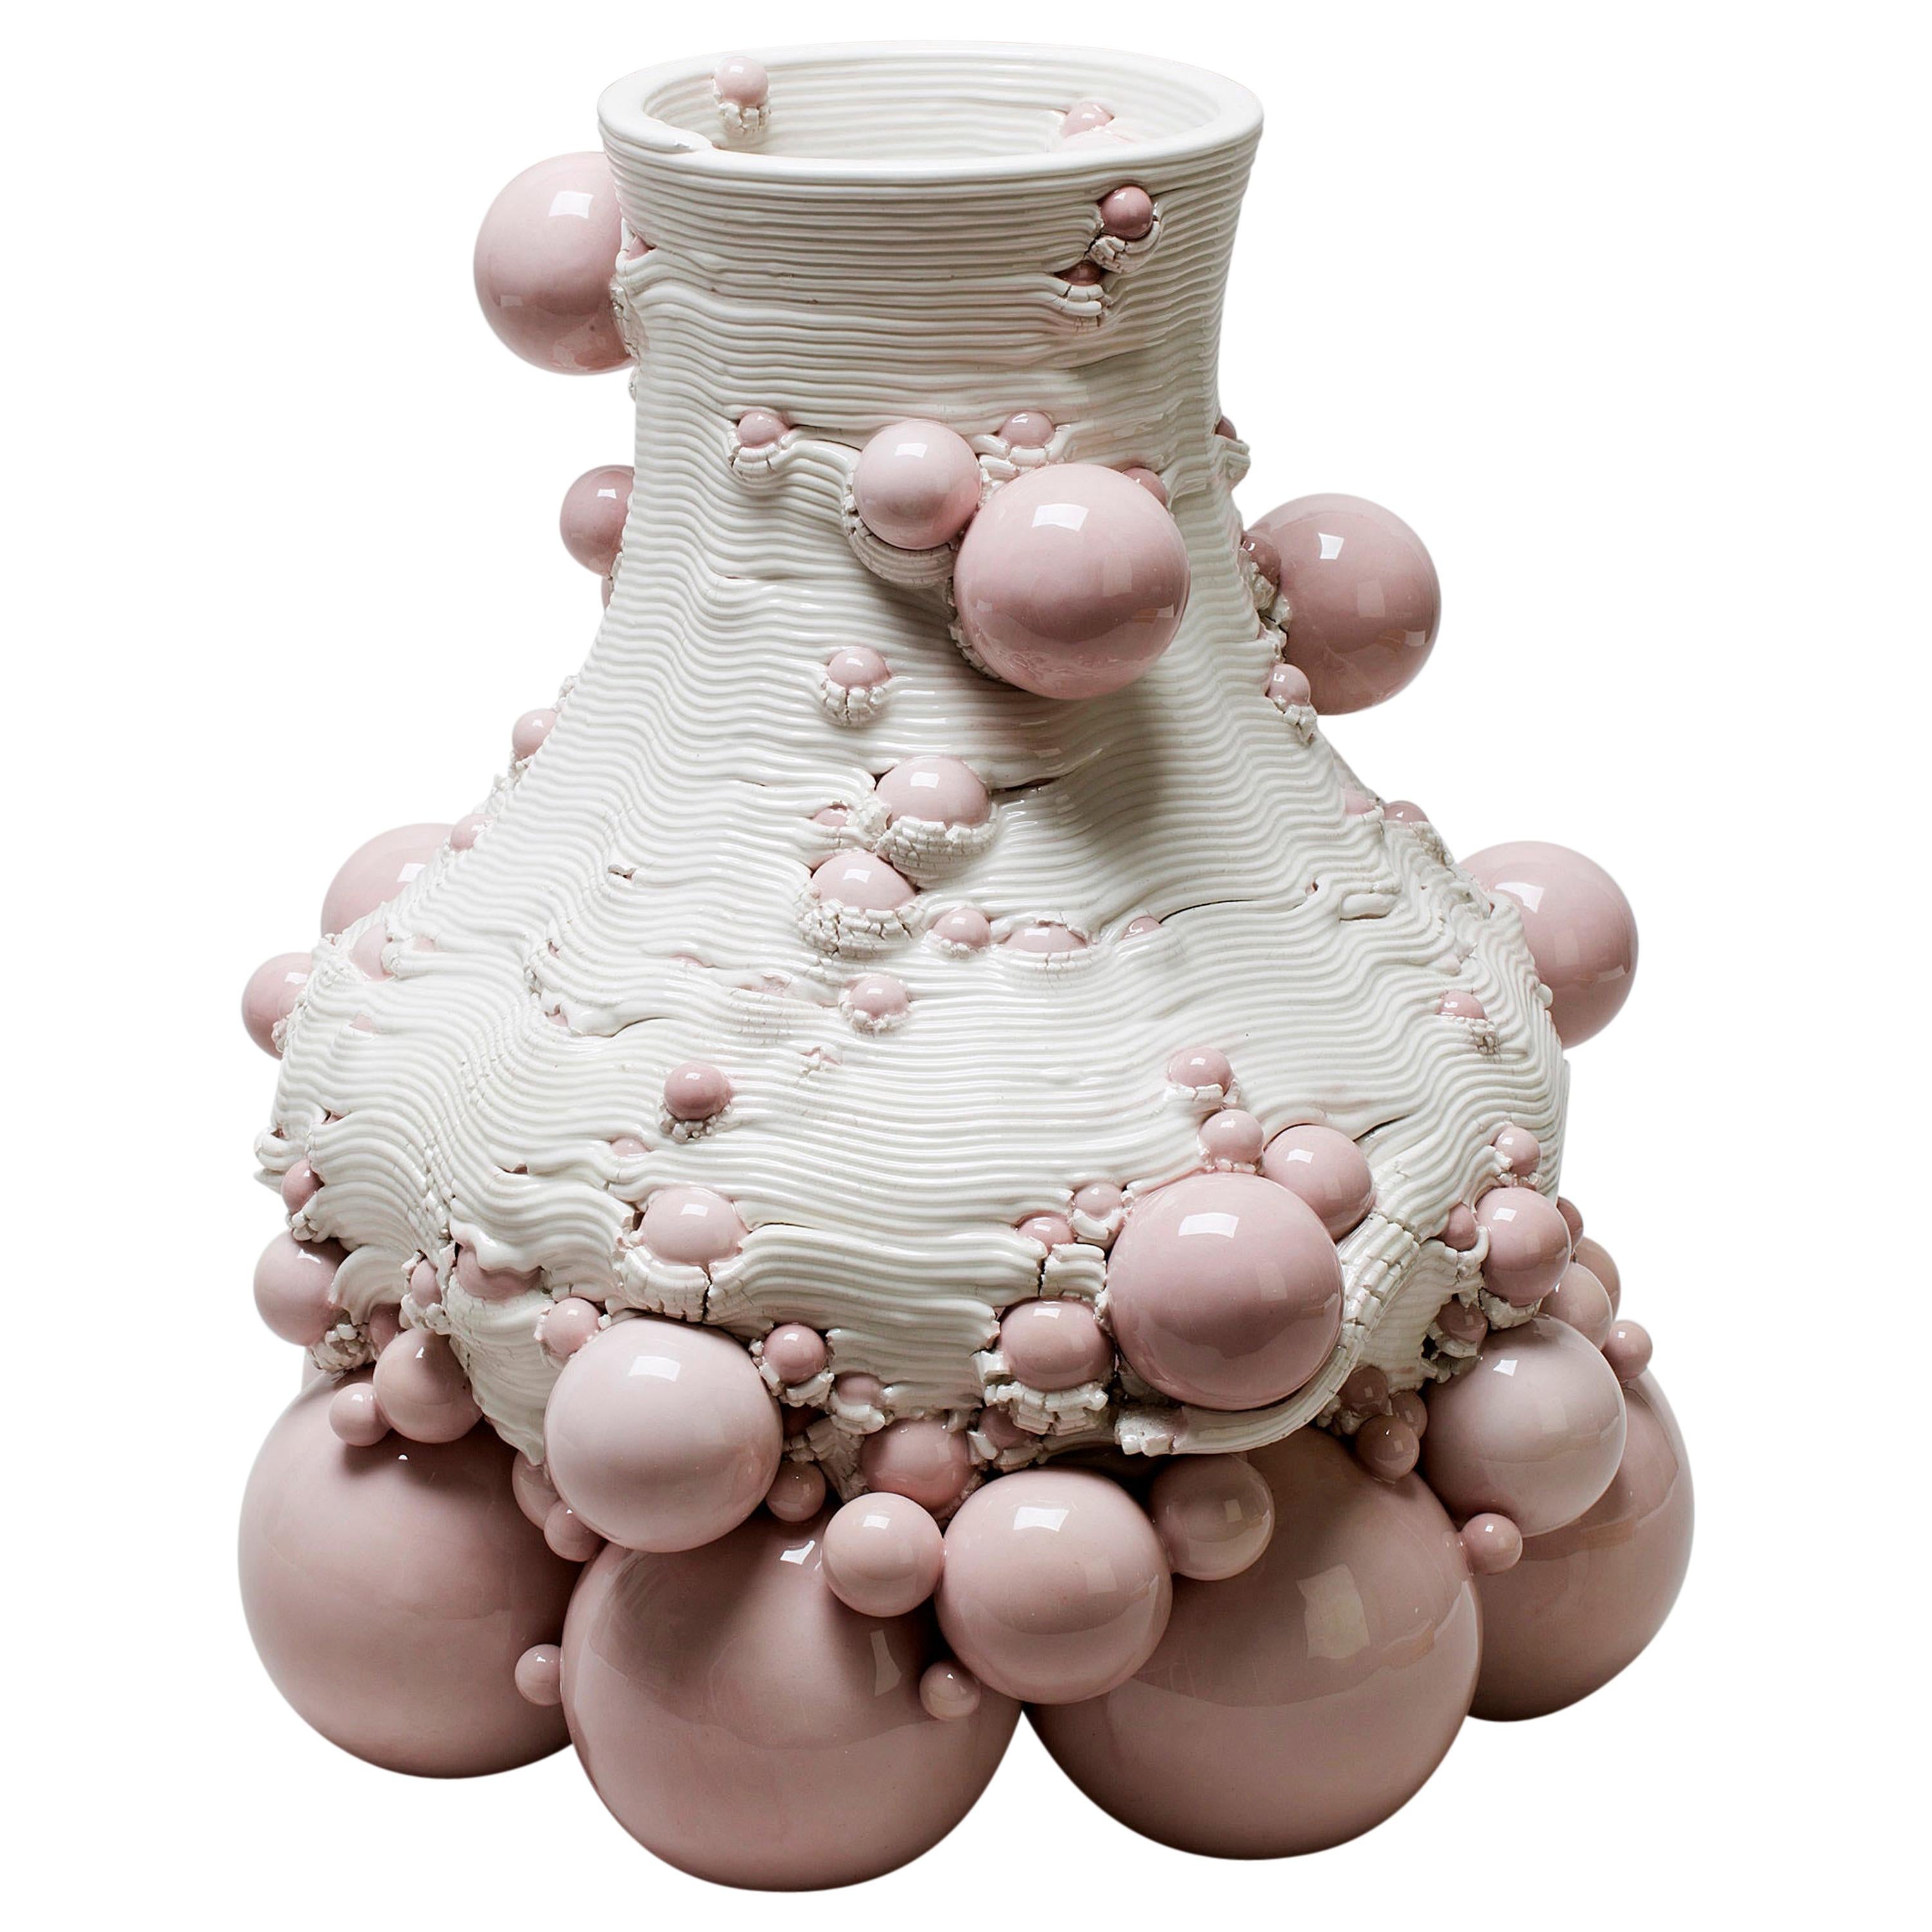 White Ceramic Sculptural Vase Italian Contemporary, 21st Century contemporary